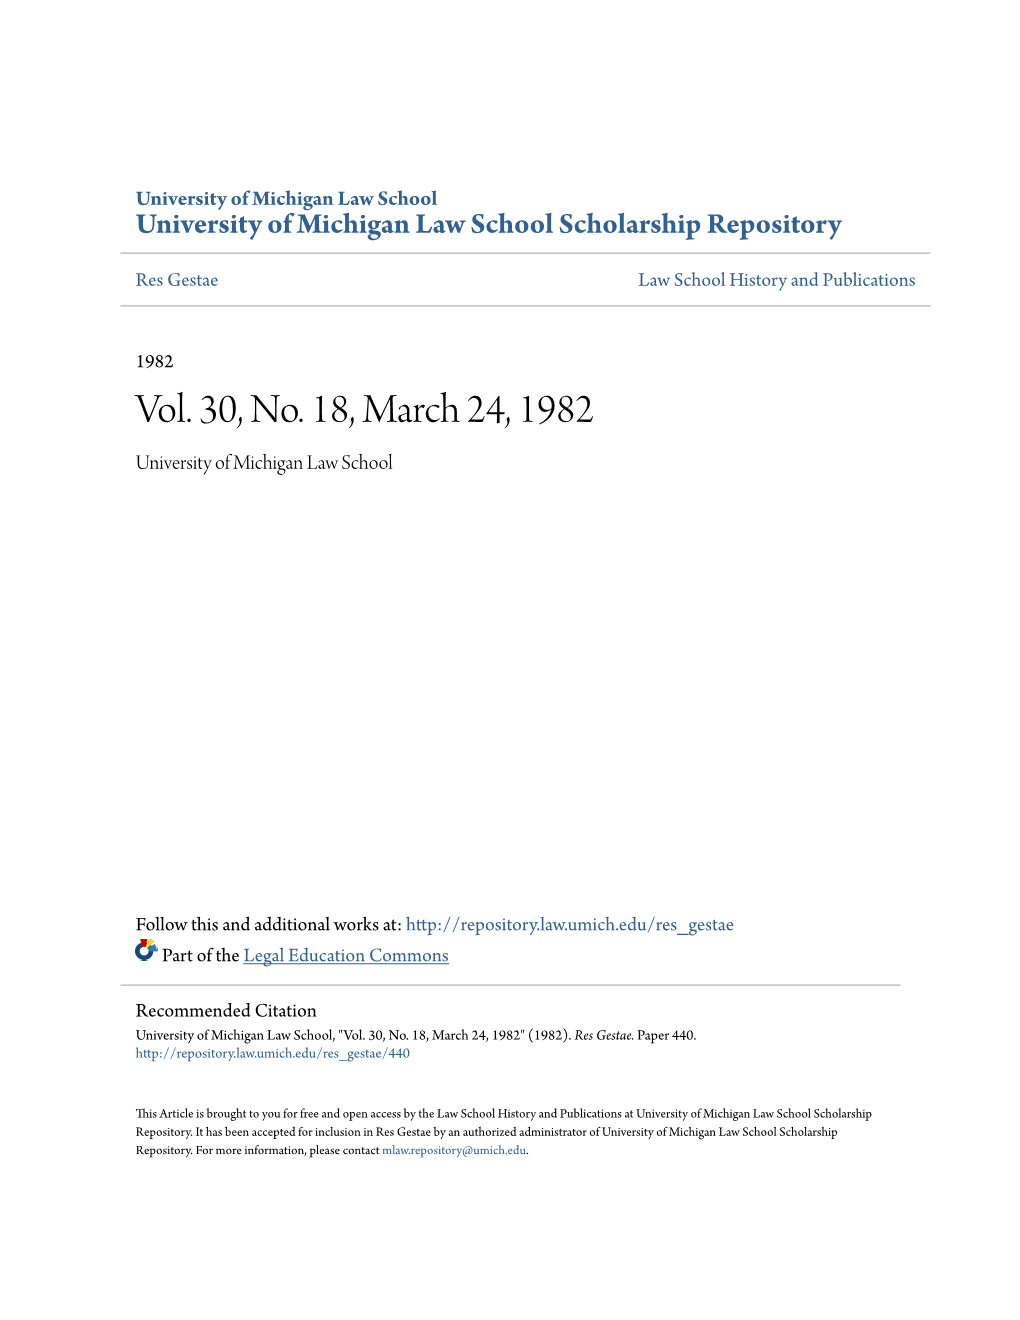 Vol. 30, No. 18, March 24, 1982 University of Michigan Law School